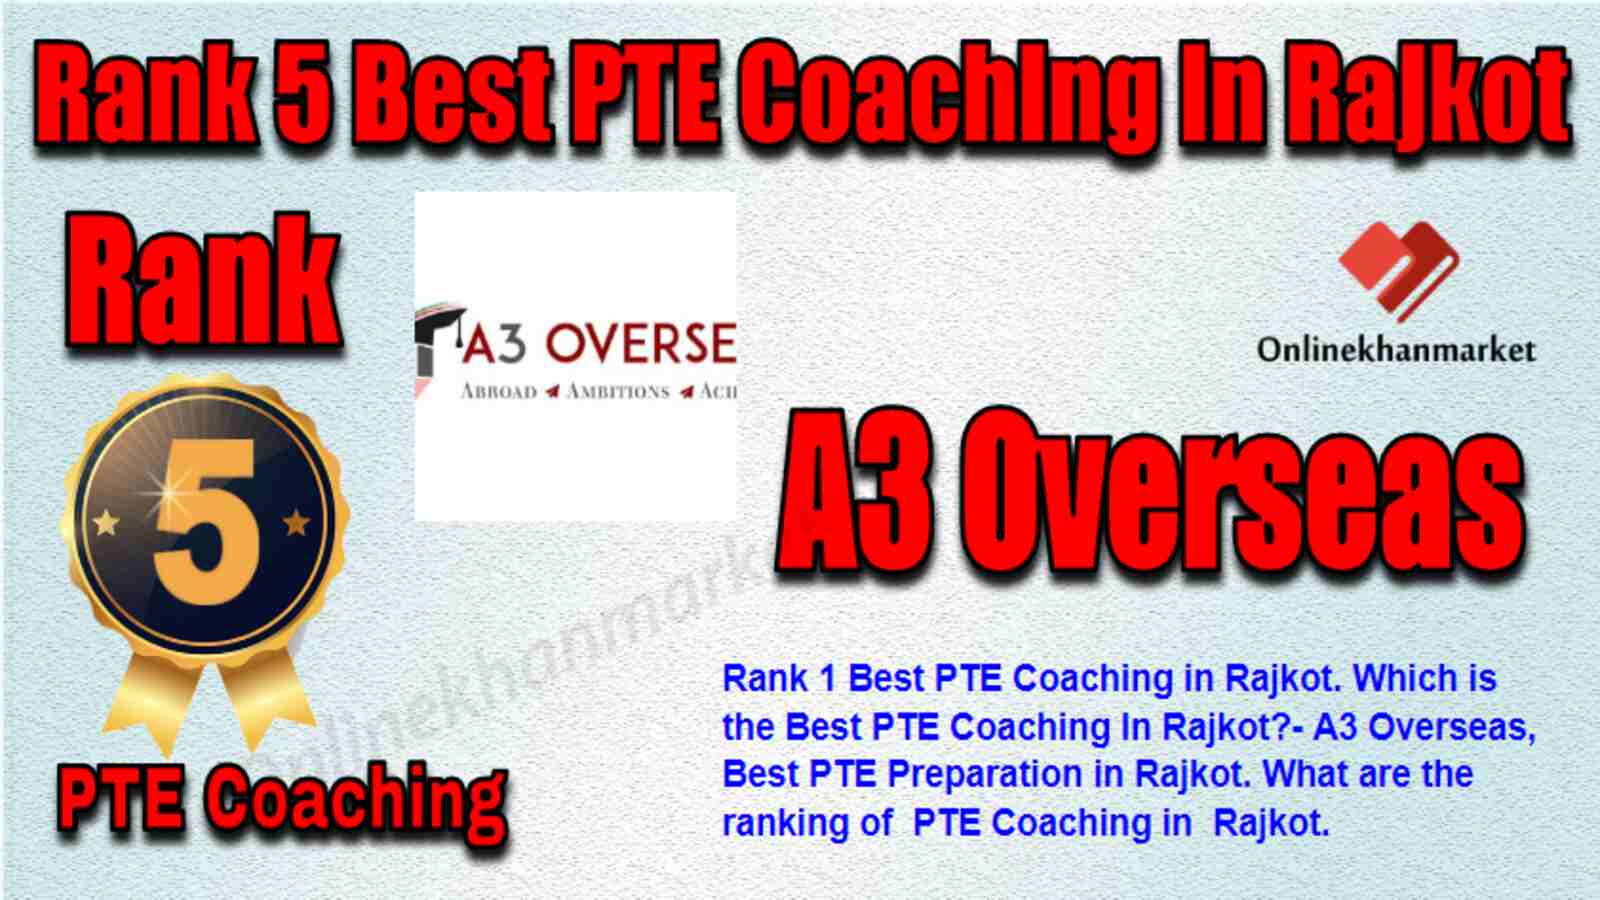 Rank 5 Best PTE Coaching in Rajkot